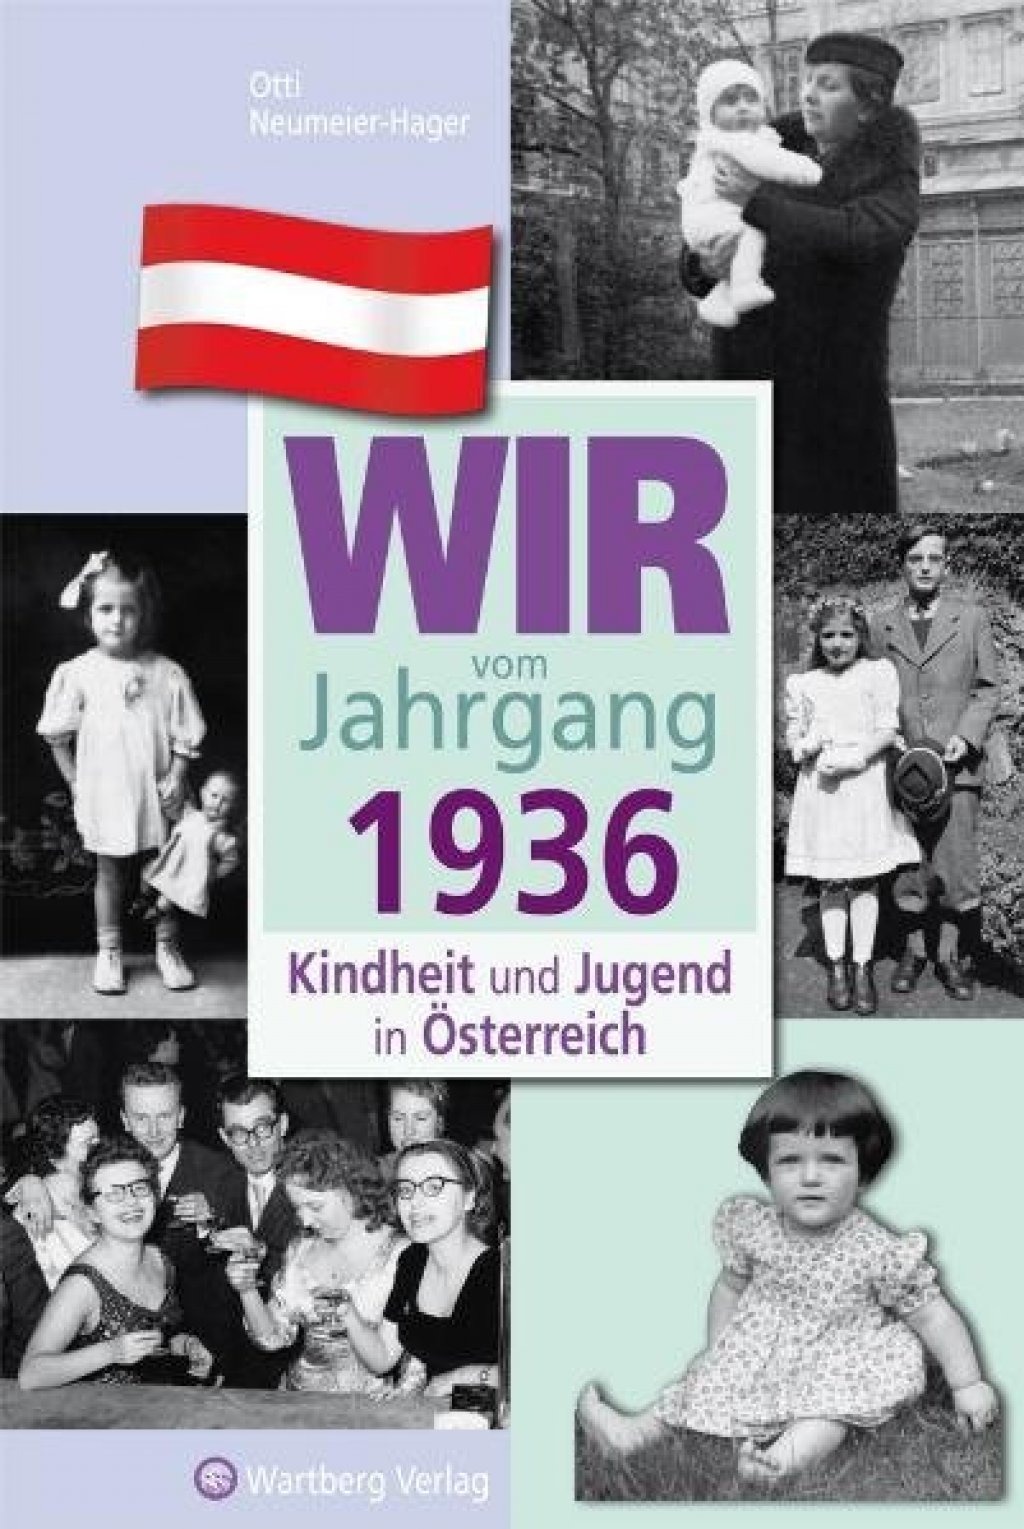 Wir vom Jahrgang 1936 - Kindheit und Jugend in Österreich